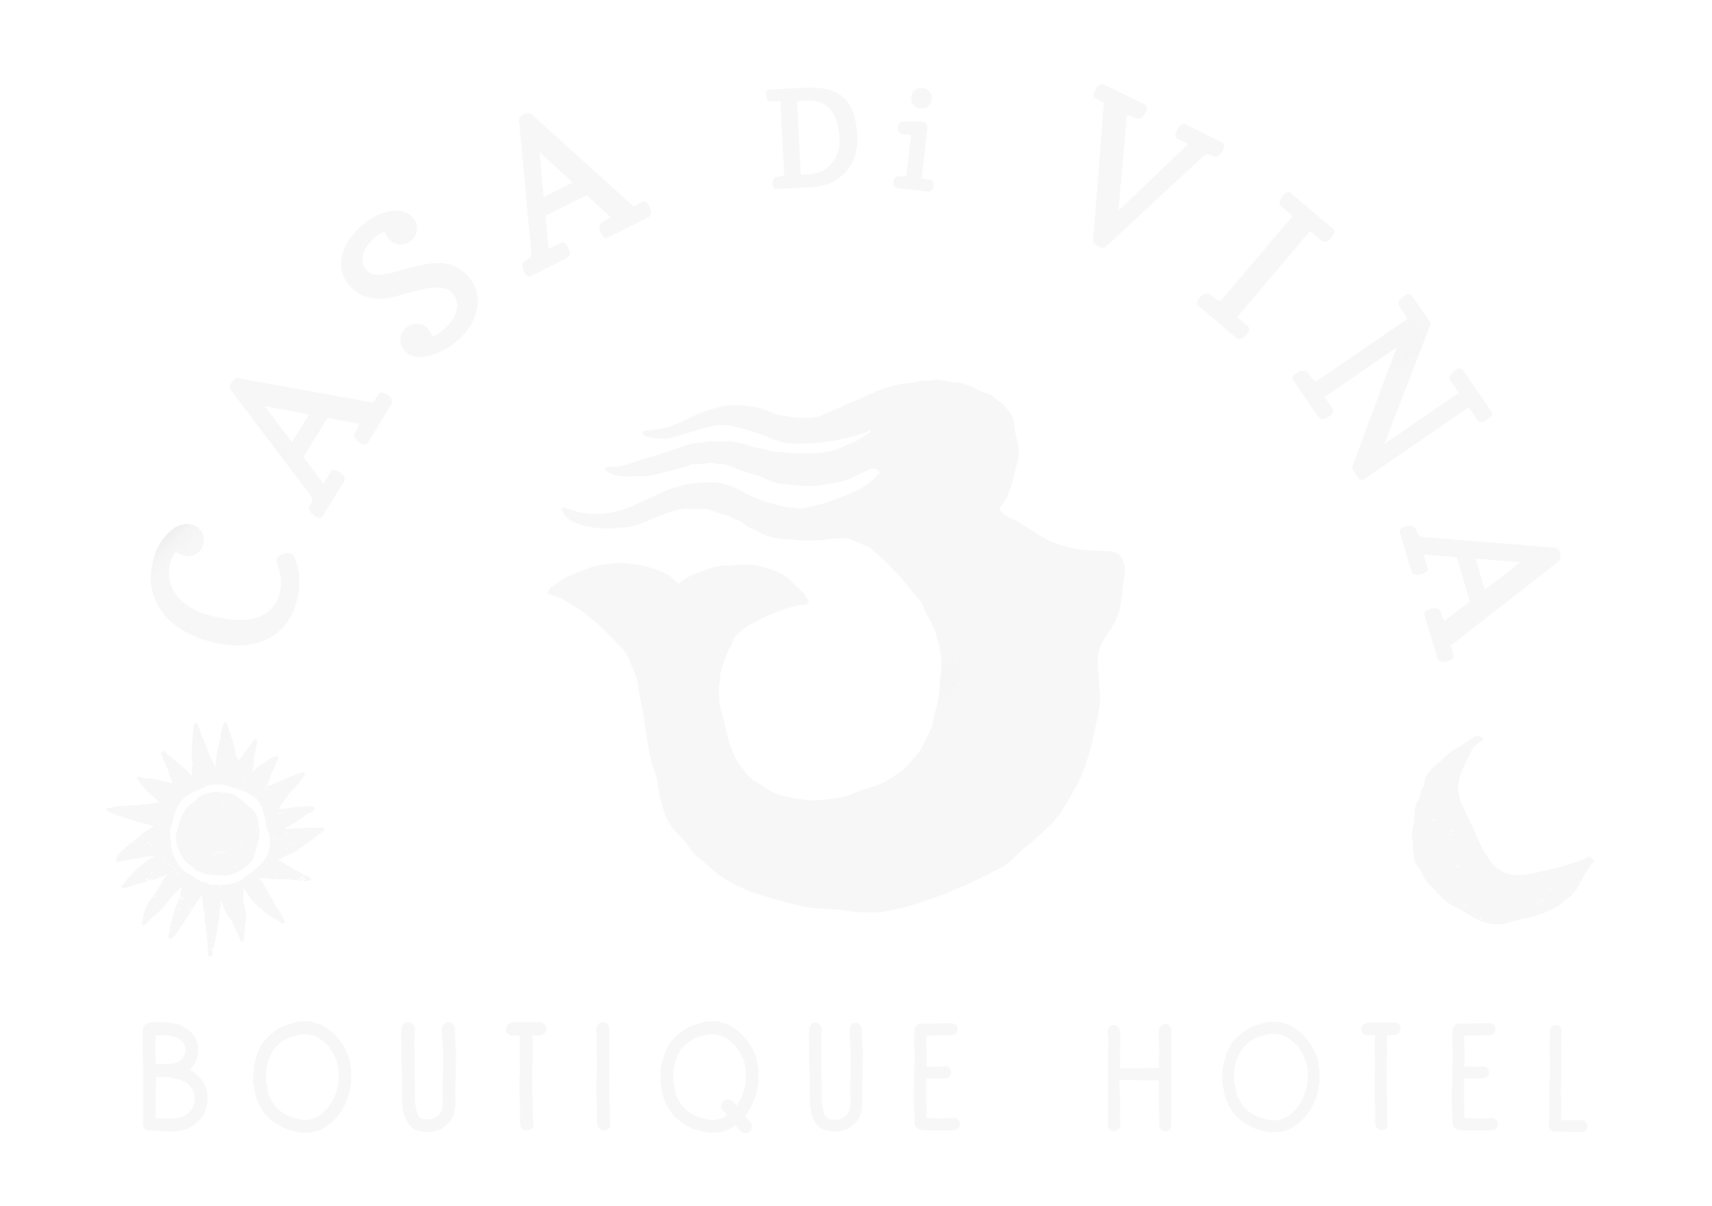 Casa Di Vina Hotel